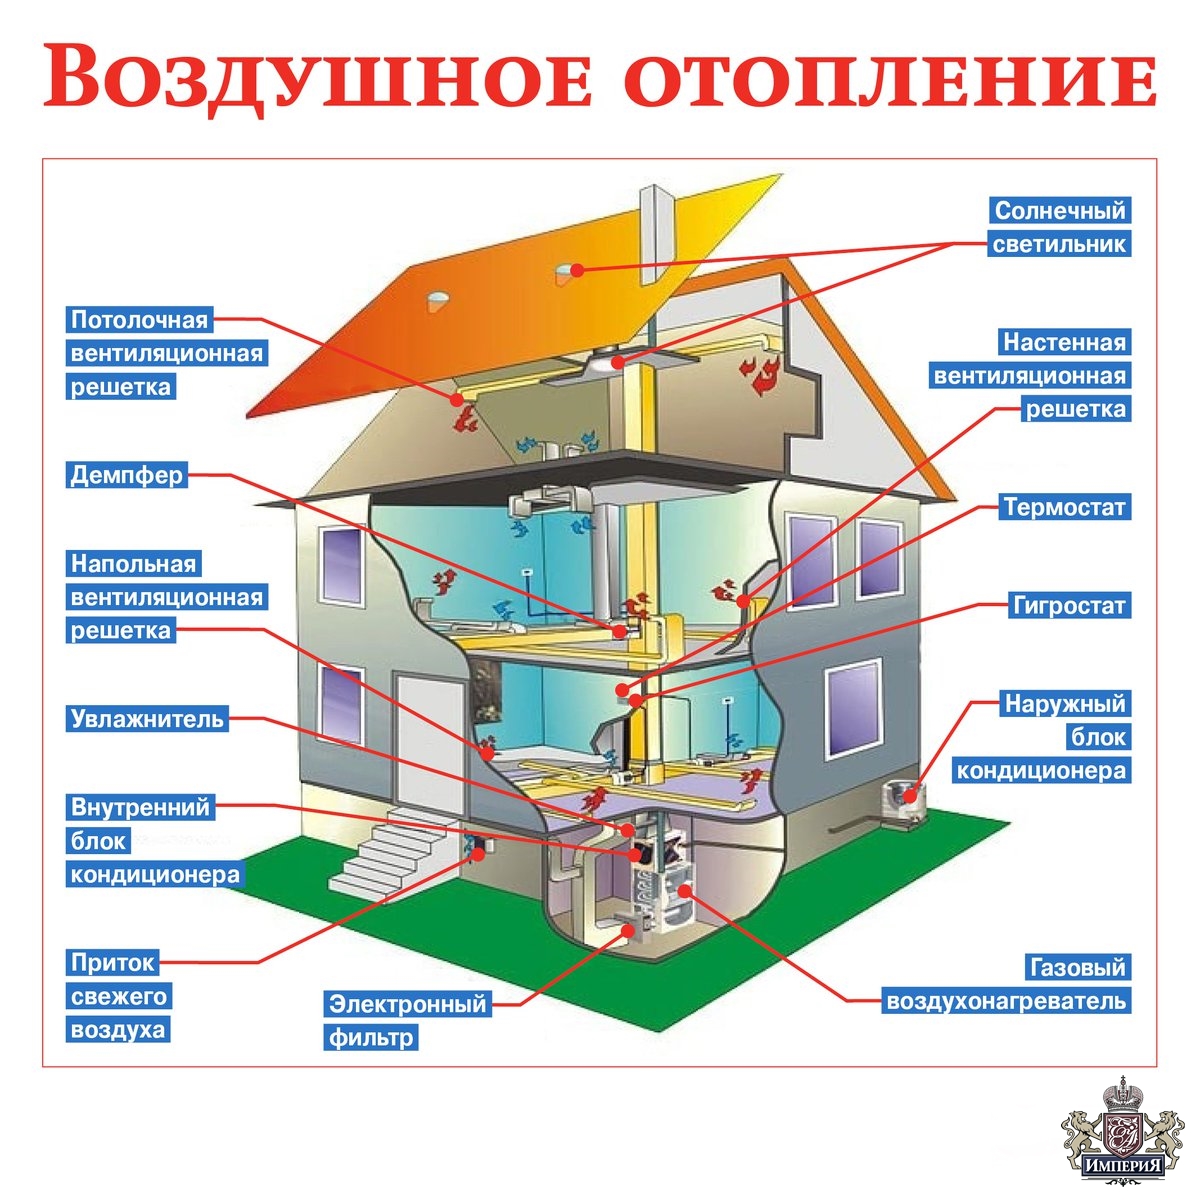 Воздушное отопление частного дома - устройство, состав и принцип действия